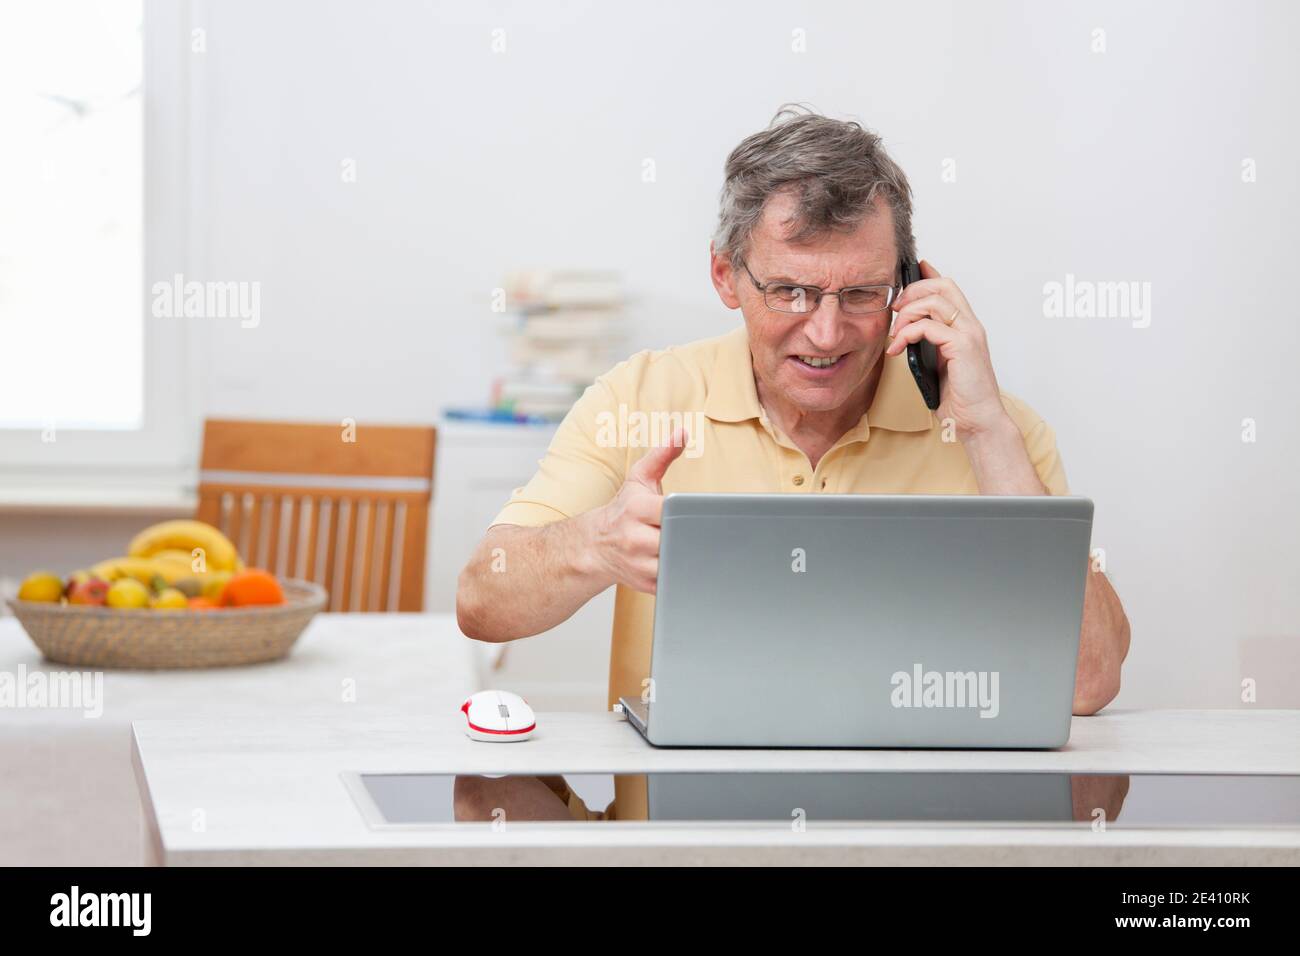 Ärgerlicher reifer Mann, der Probleme hat, während er von zu Hause aus arbeitet Computer oder Internet - Fokus auf das Gesicht Stockfoto